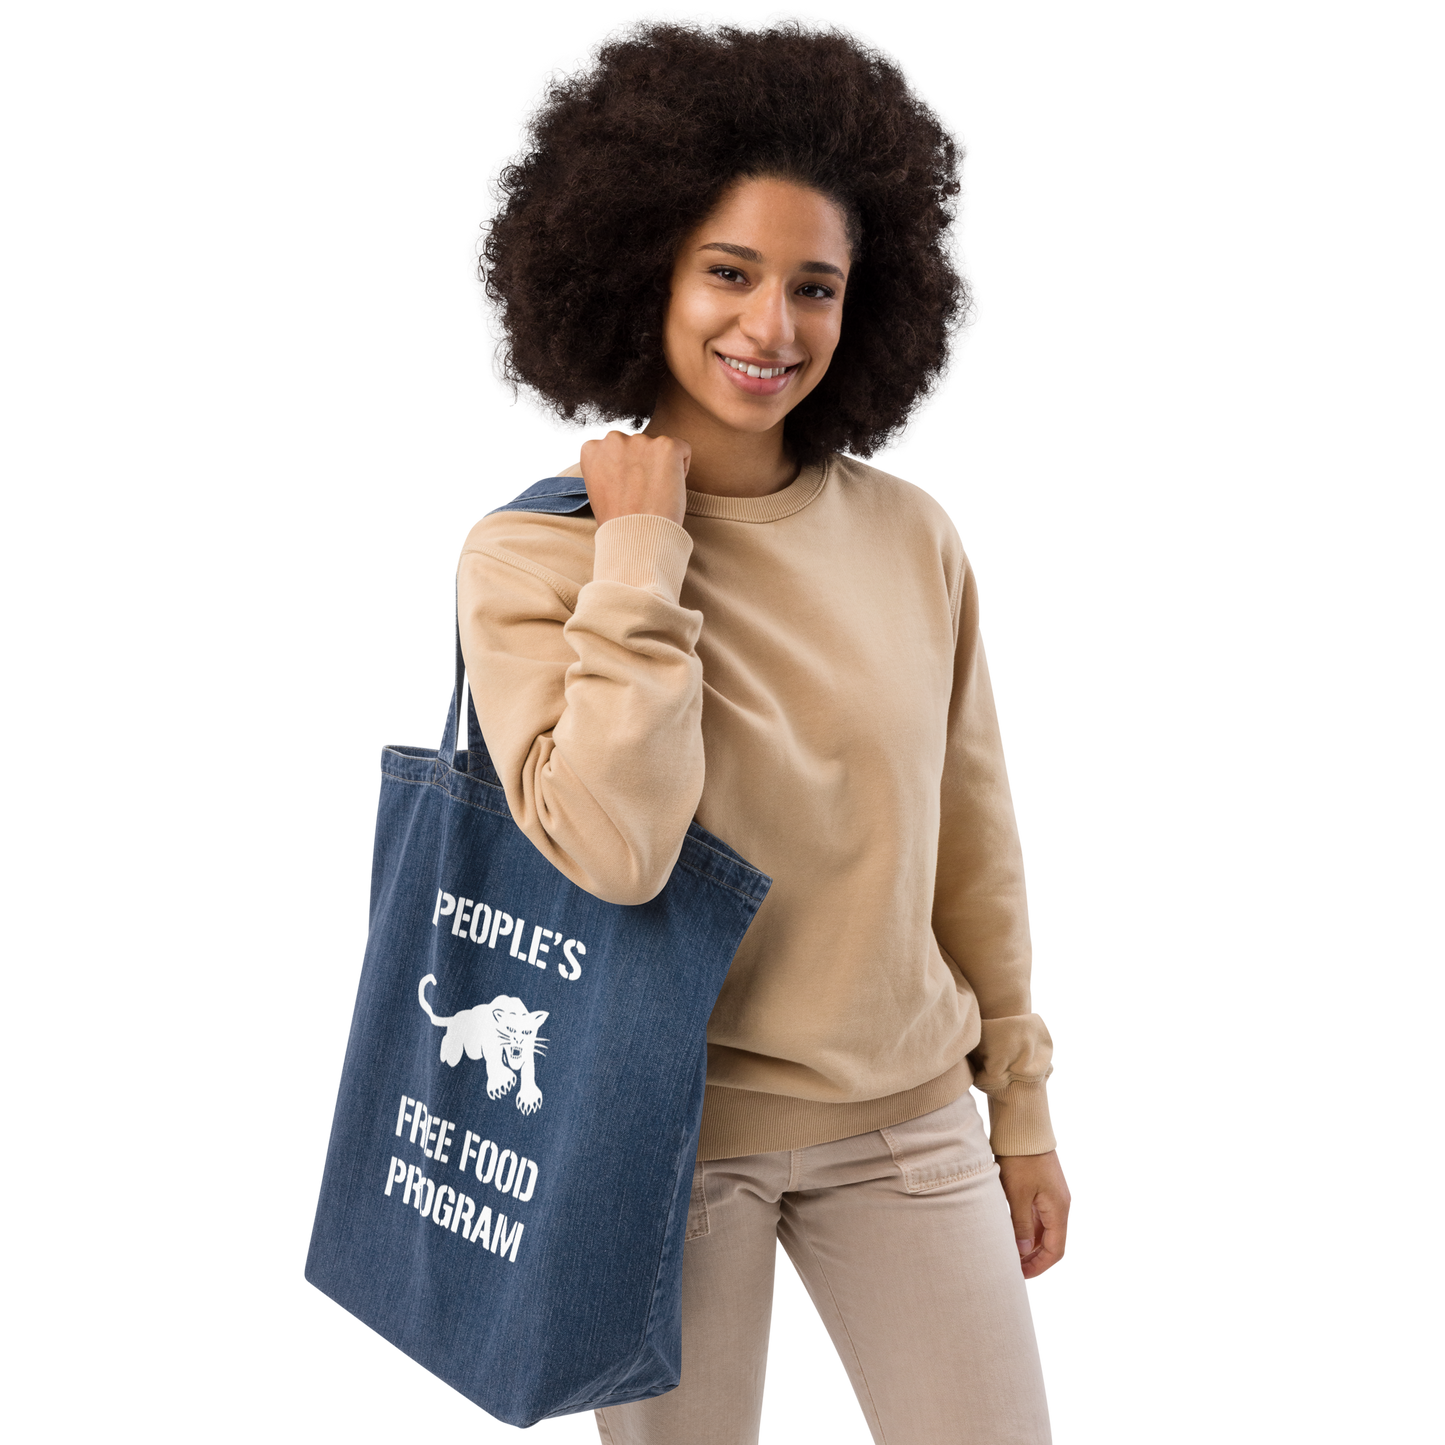 Black Panther Free Food Program Organic Denim Tote Bag